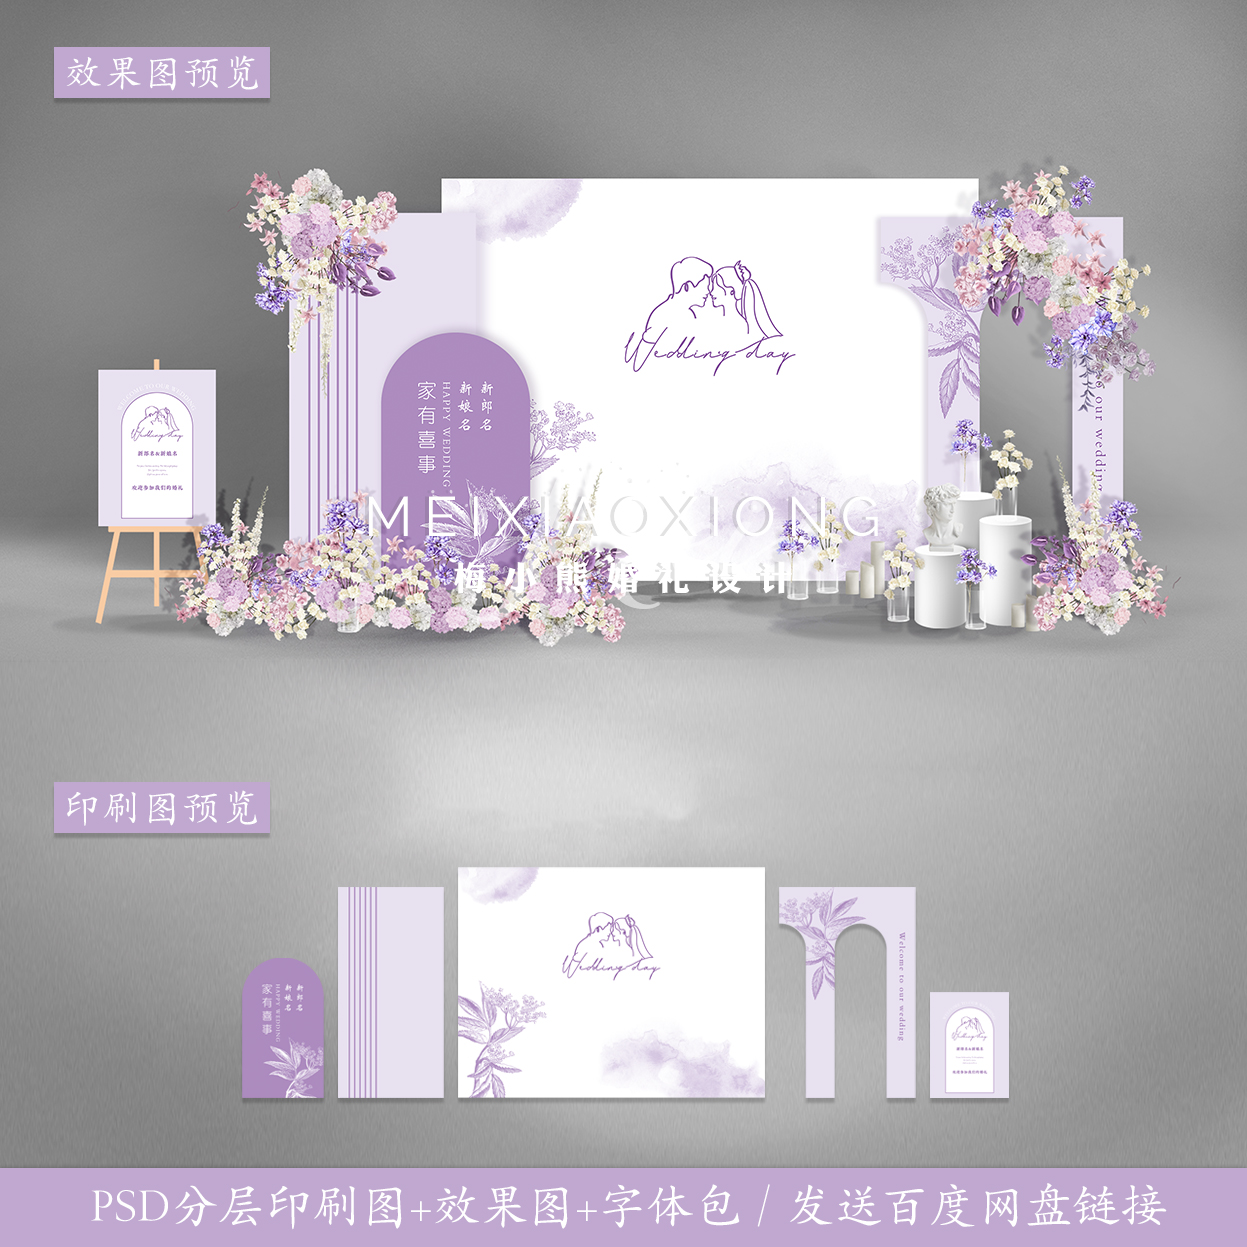 白紫色婚礼迎宾签到留影区喷绘KT板 结婚背景墙设计效果图PSD模板